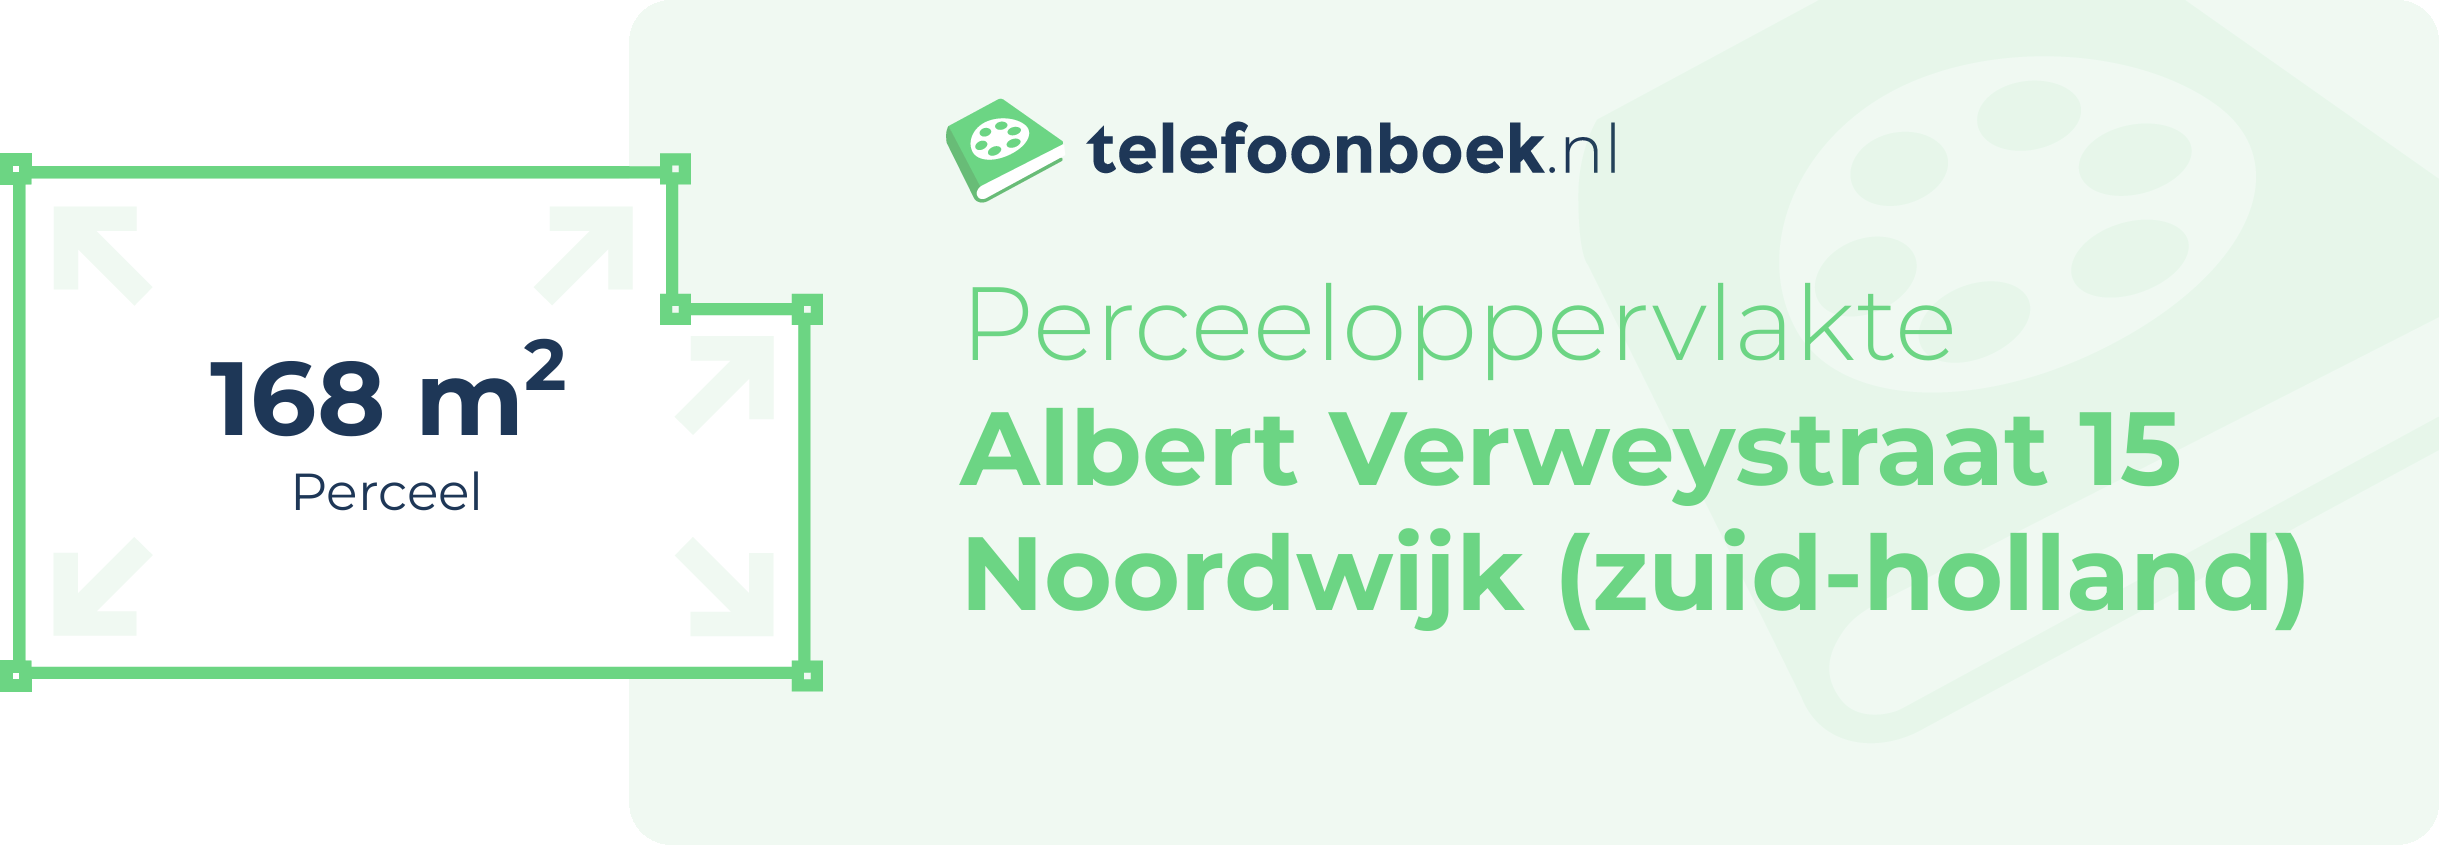 Perceeloppervlakte Albert Verweystraat 15 Noordwijk (Zuid-Holland)